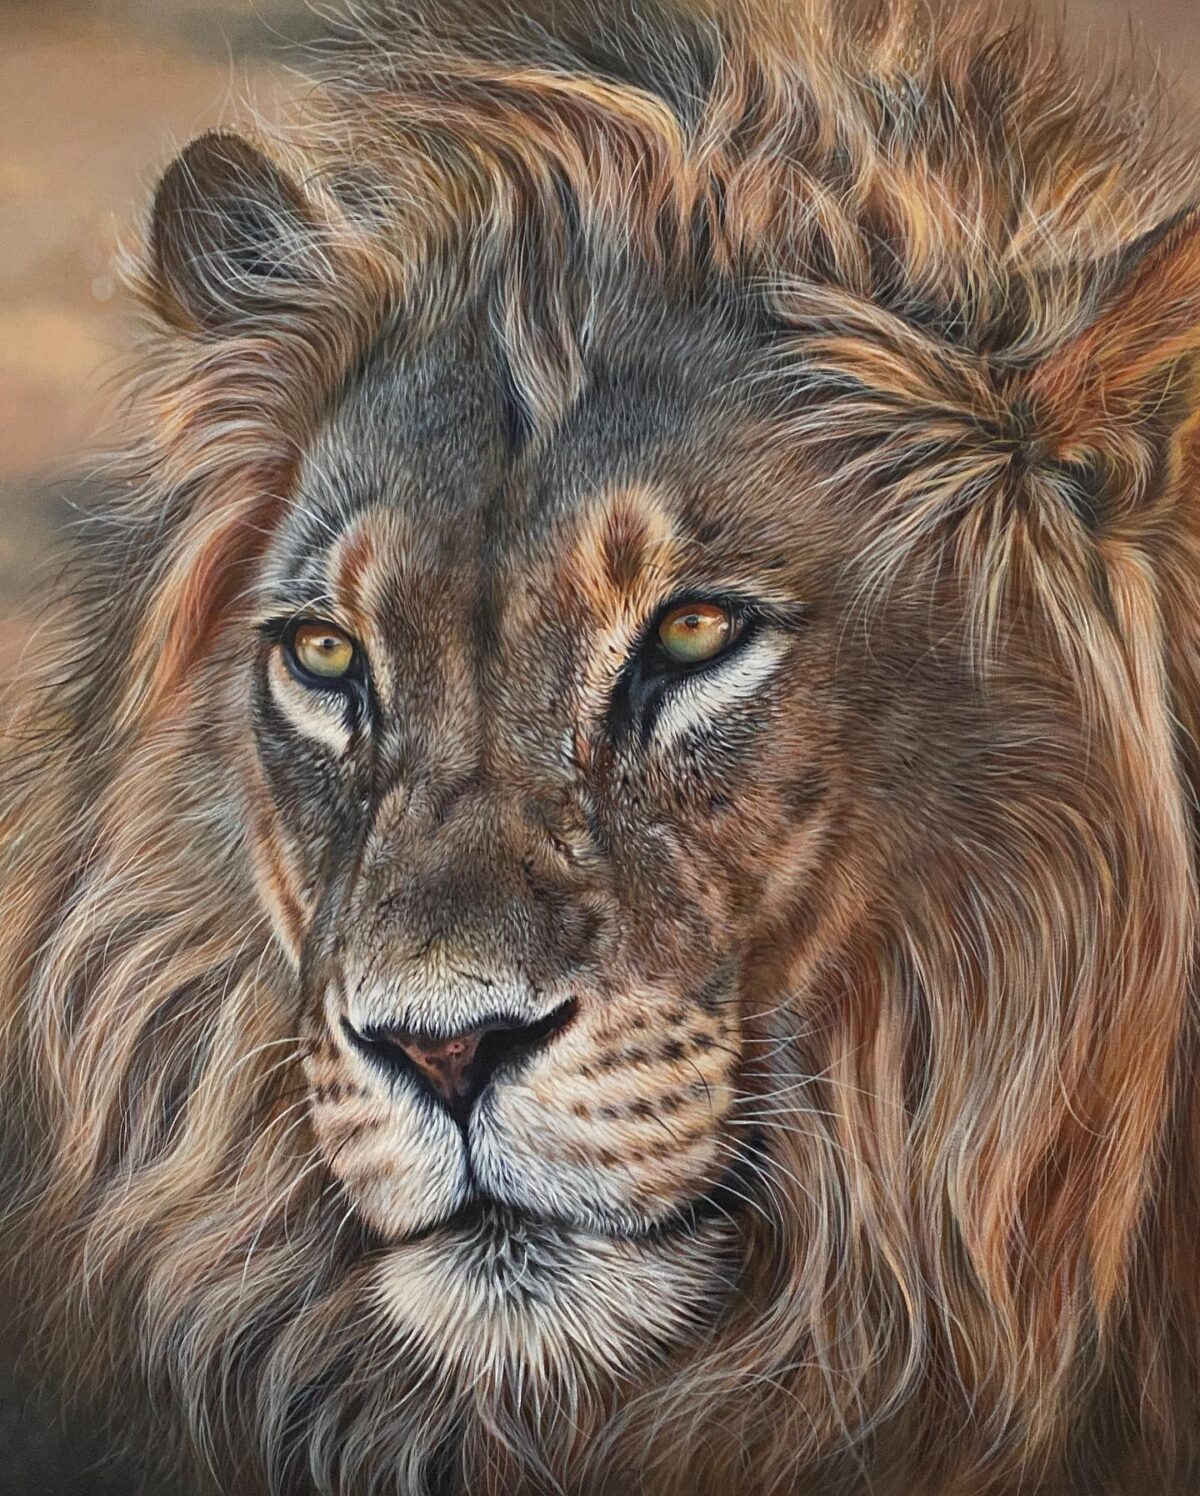 Comisión pintura acrílica de un león macho por Julie Rhodes. (Cortesía de Julie Rhodes )